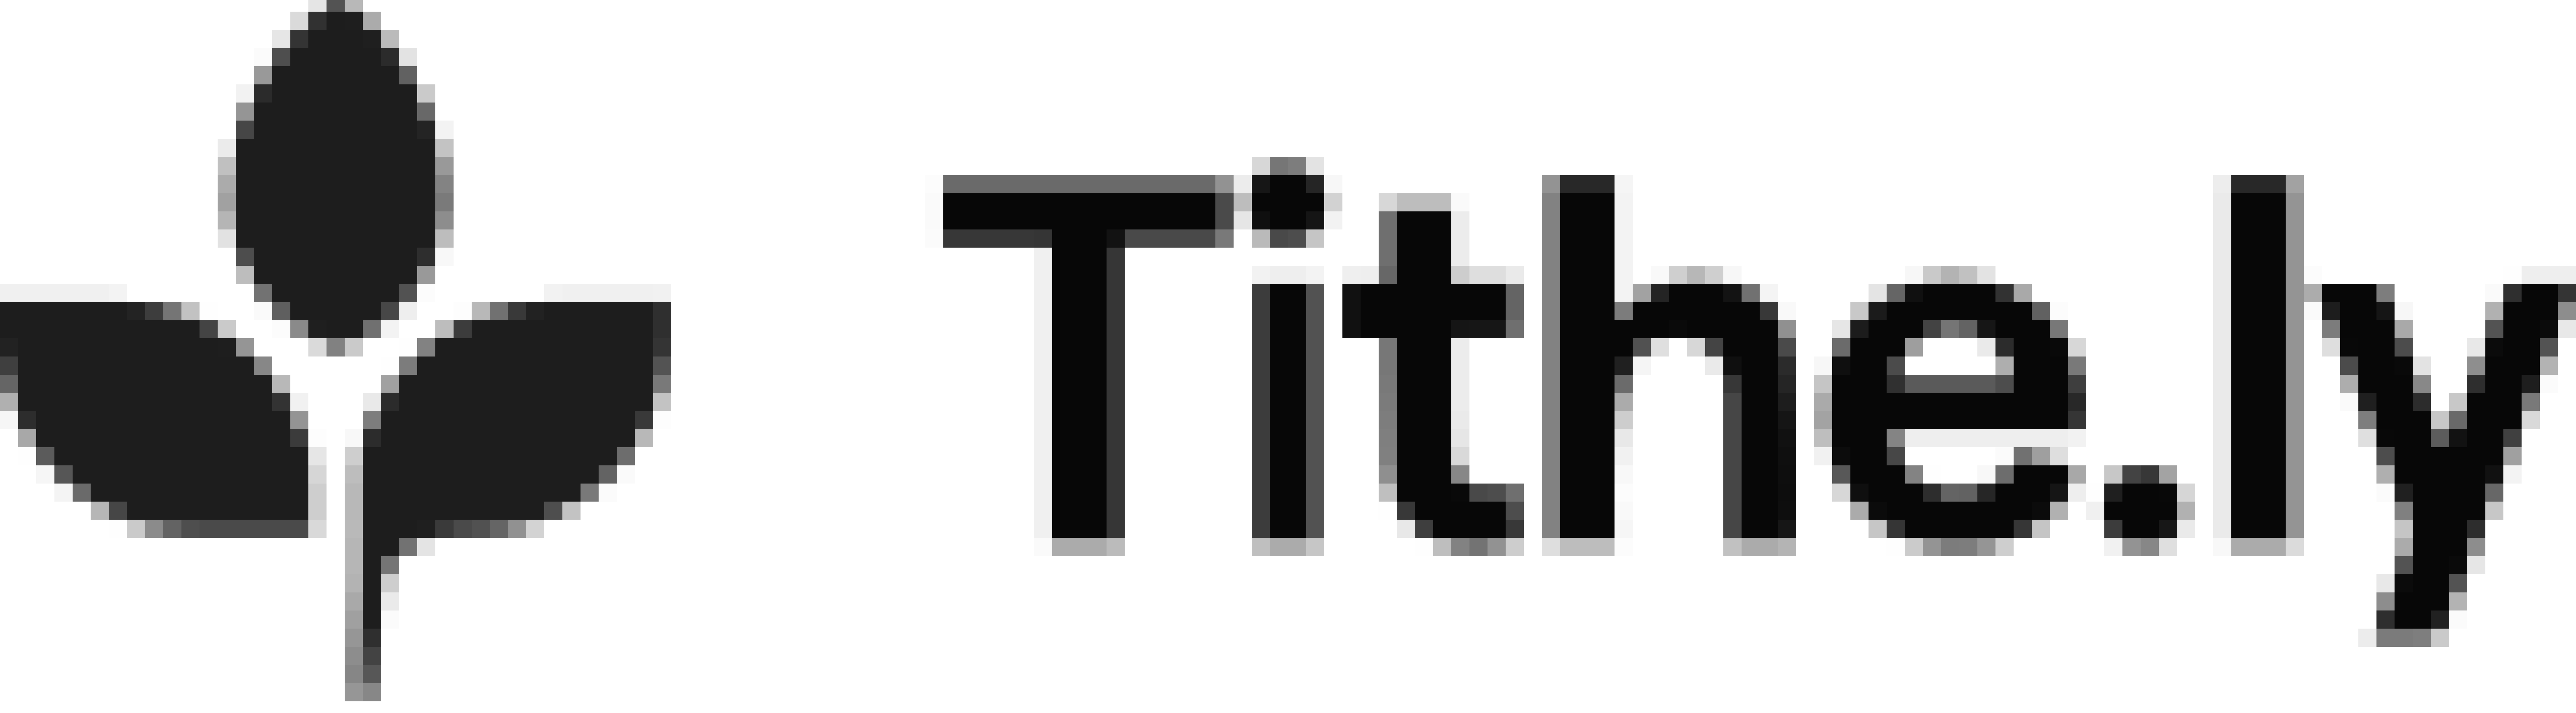 Company logo for Tithe.ly